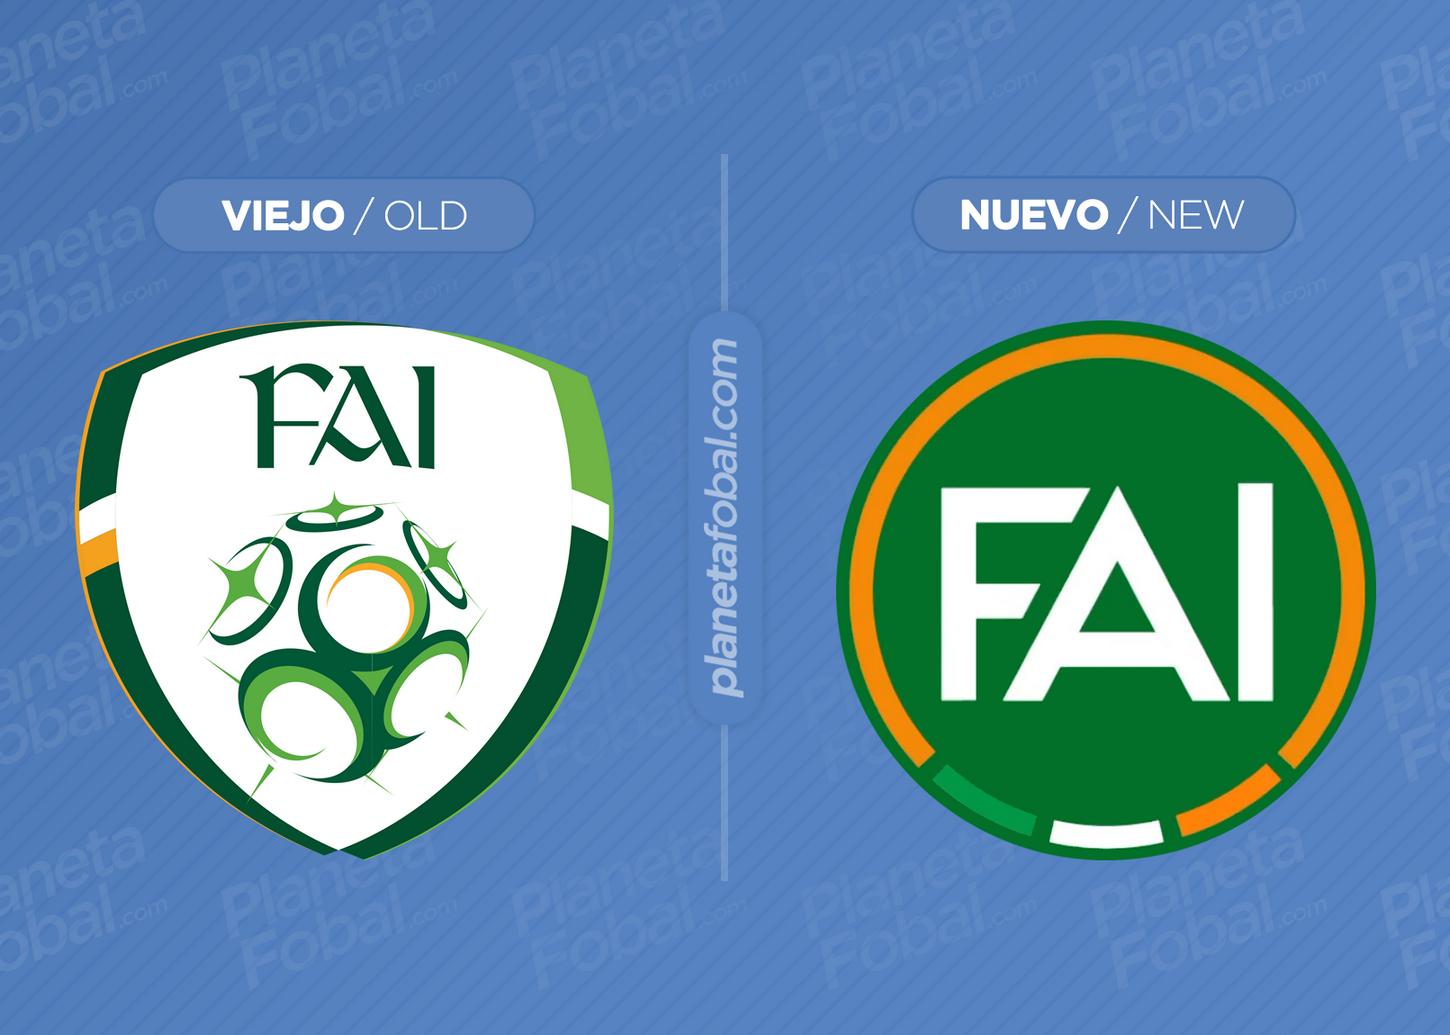 Nuevo escudo de la Asociación Irlandesa de Fútbol (FAI)